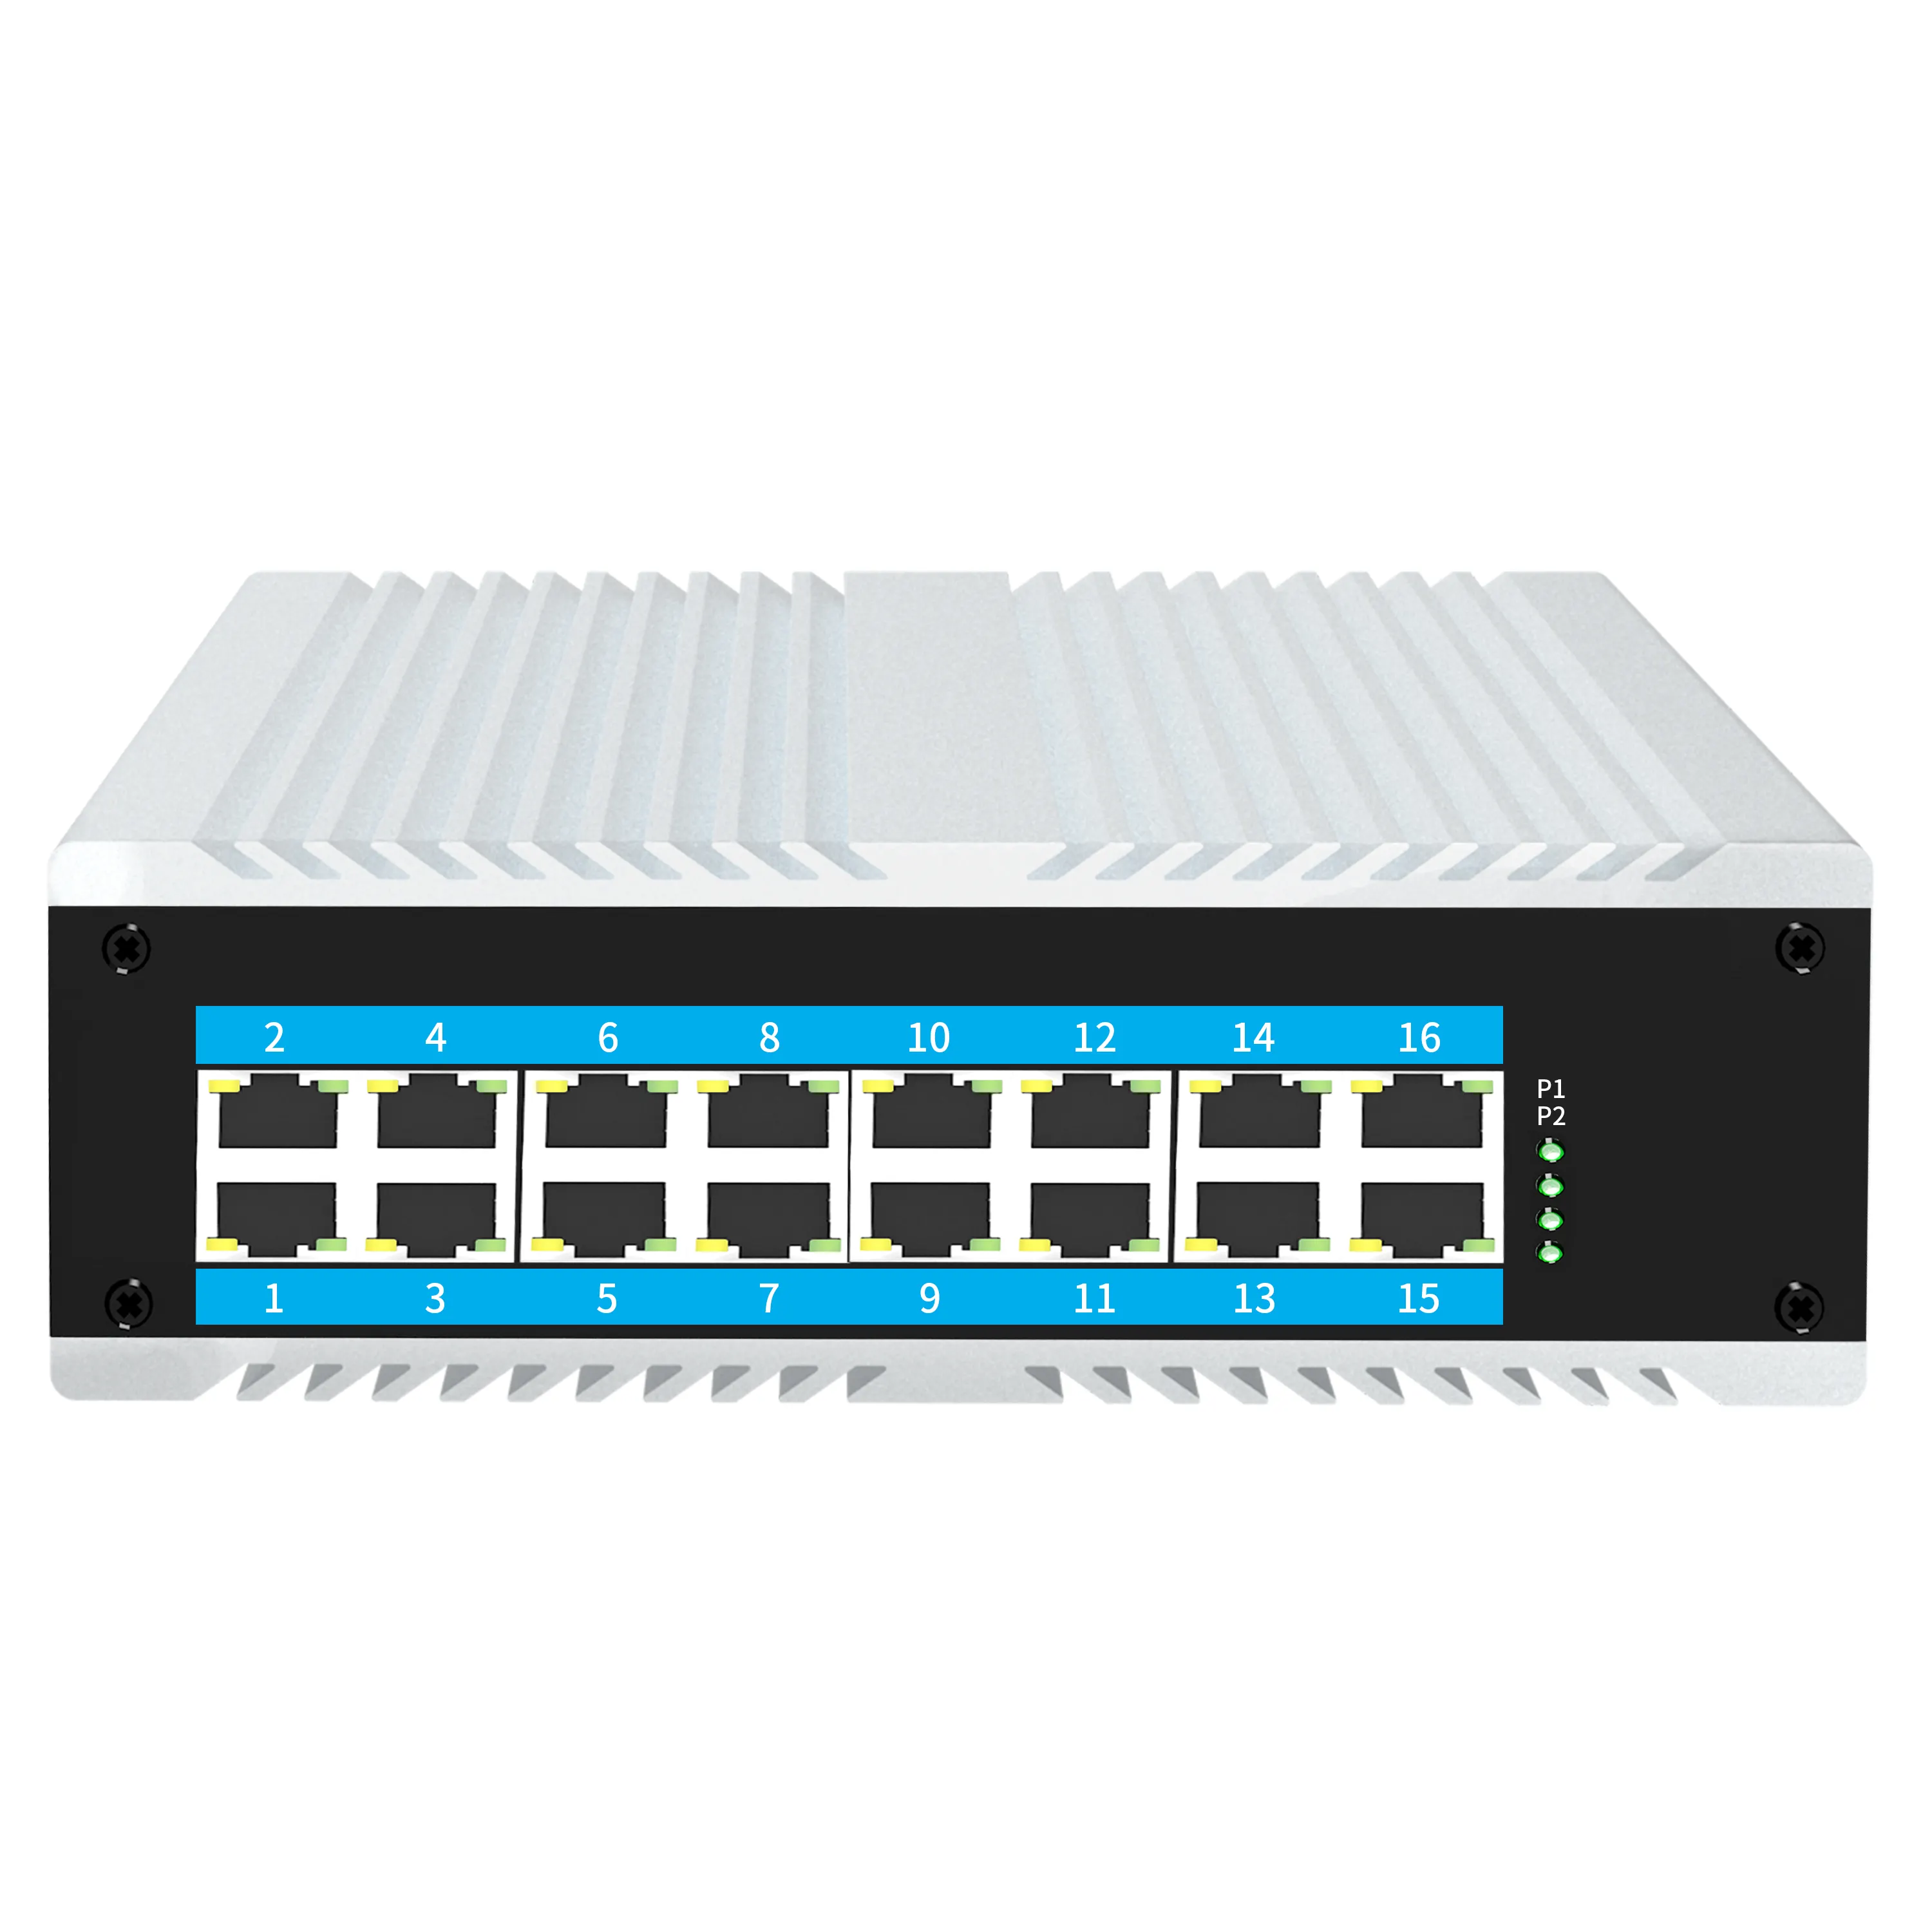 Conmutador POE Ethernet de carril DIN industrial no gestionado de 16 puertos Gigabit 10/100/1000m con funciones apilables SNMP QoS LACP